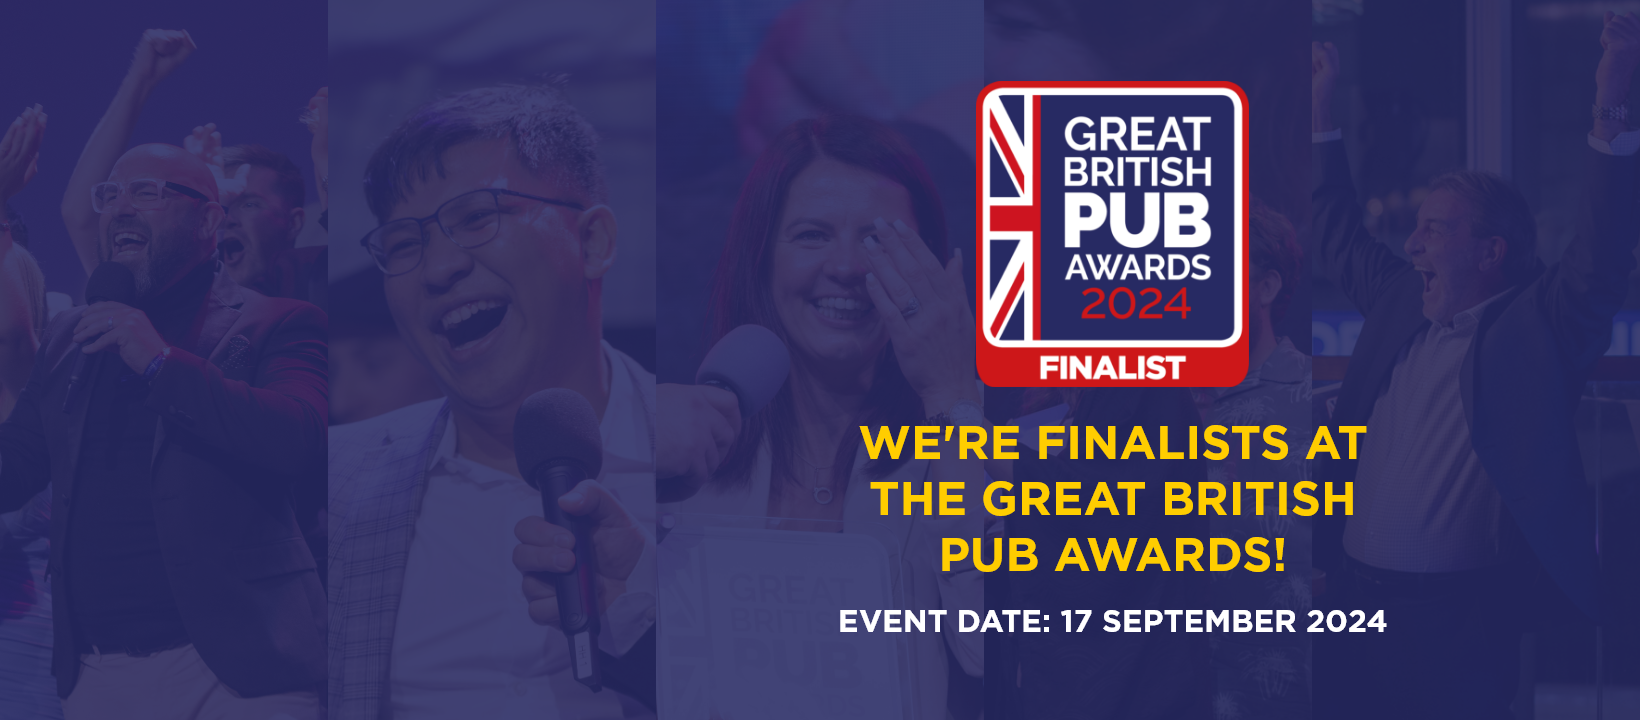 Great British Pub Award 2024 Finalist